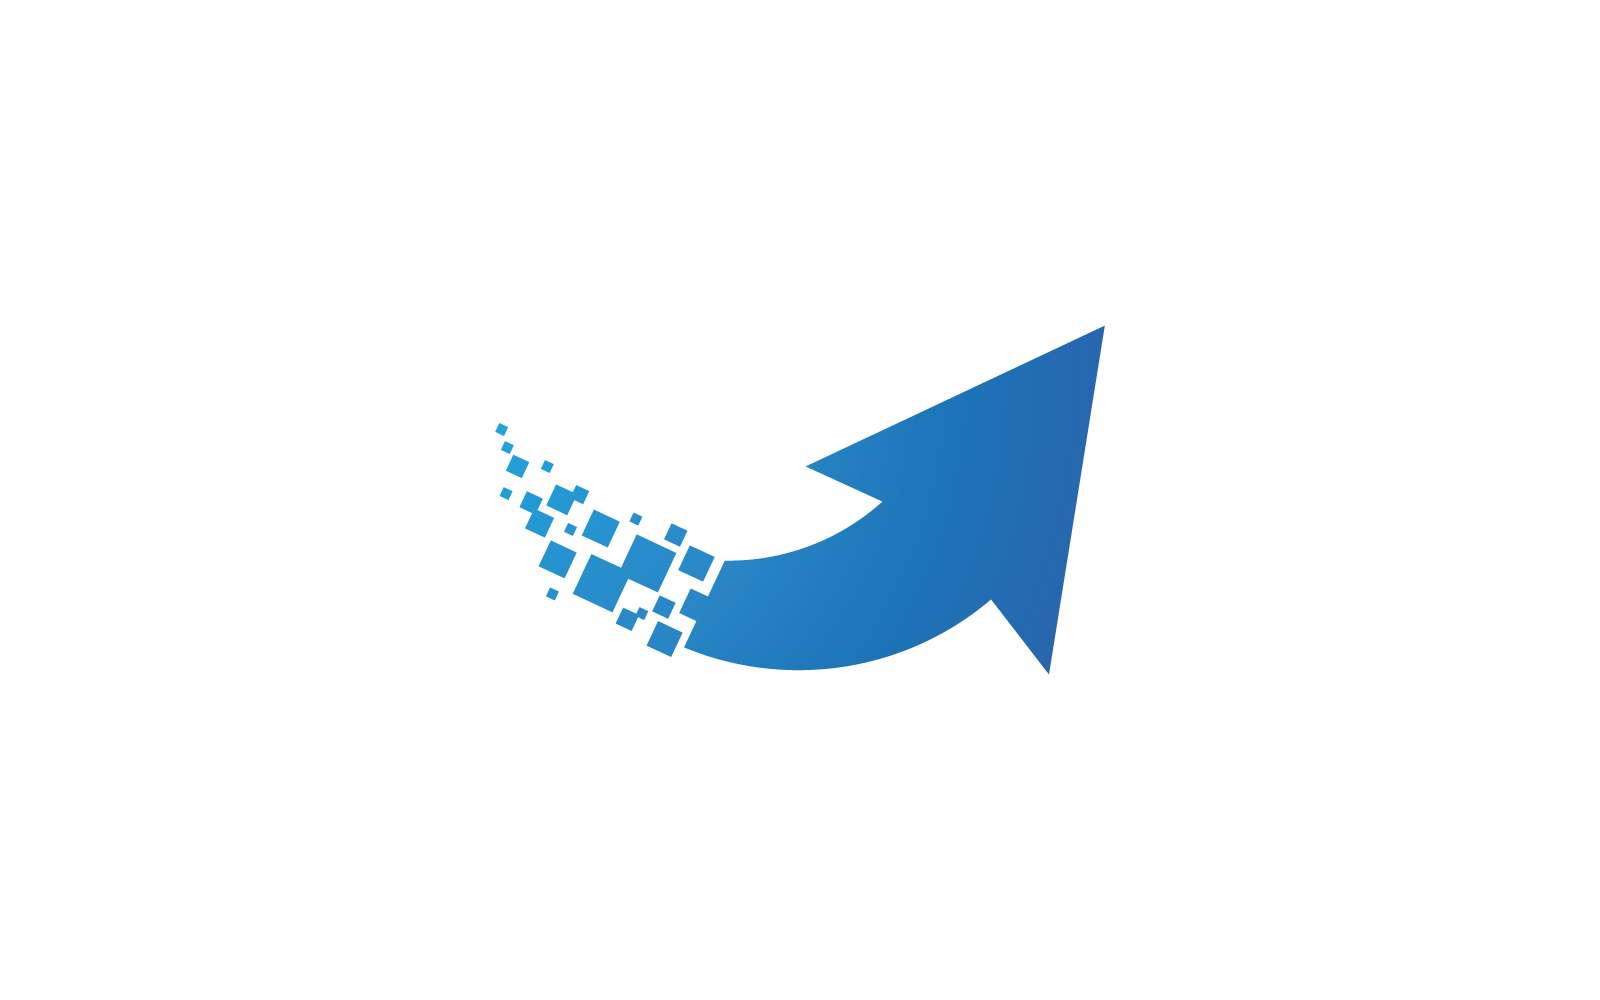 Pixel arrow technology logo illustration